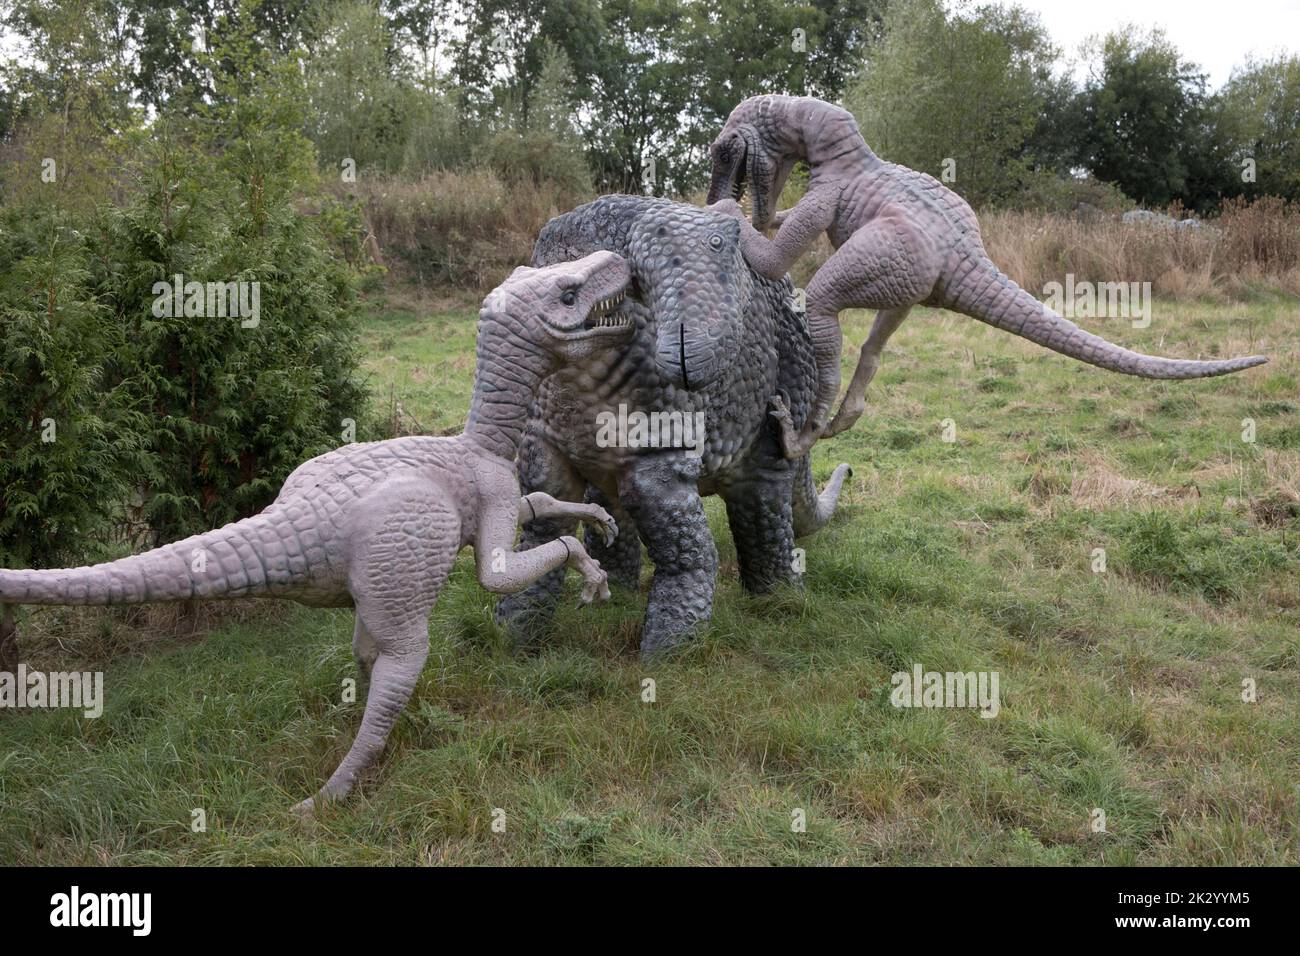 LifeSize modelli di Deinonychus theropods attaccando erbivoro Tenontosaurus tutte le cose Wild, Honeybourne, UK Foto Stock